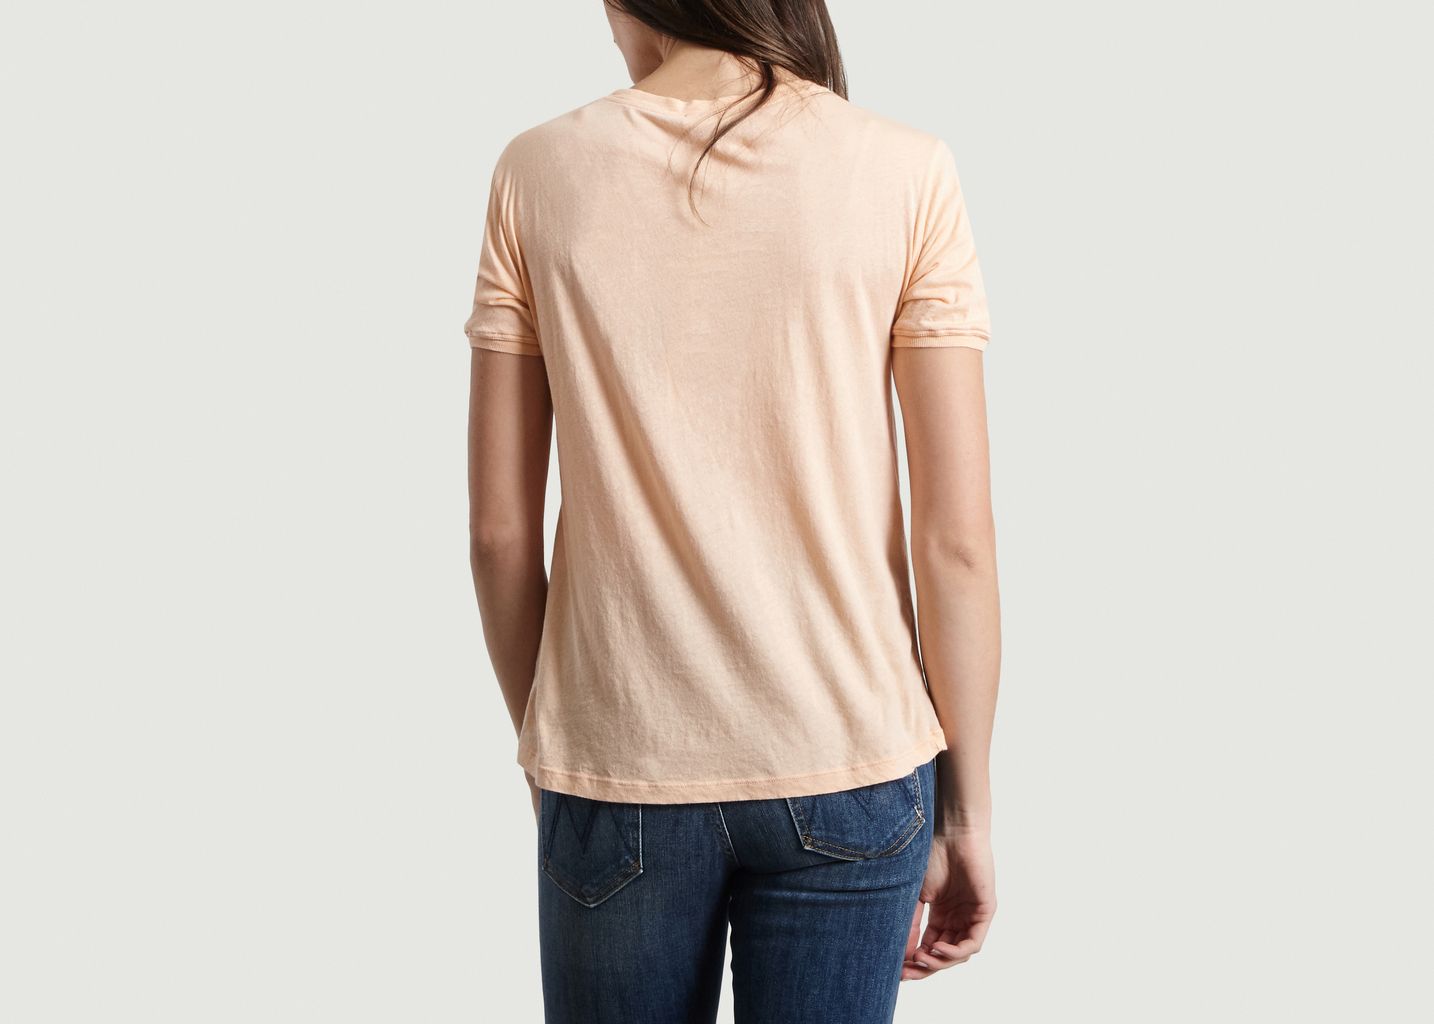 Chipiecat Cotton T-Shirt - American Vintage